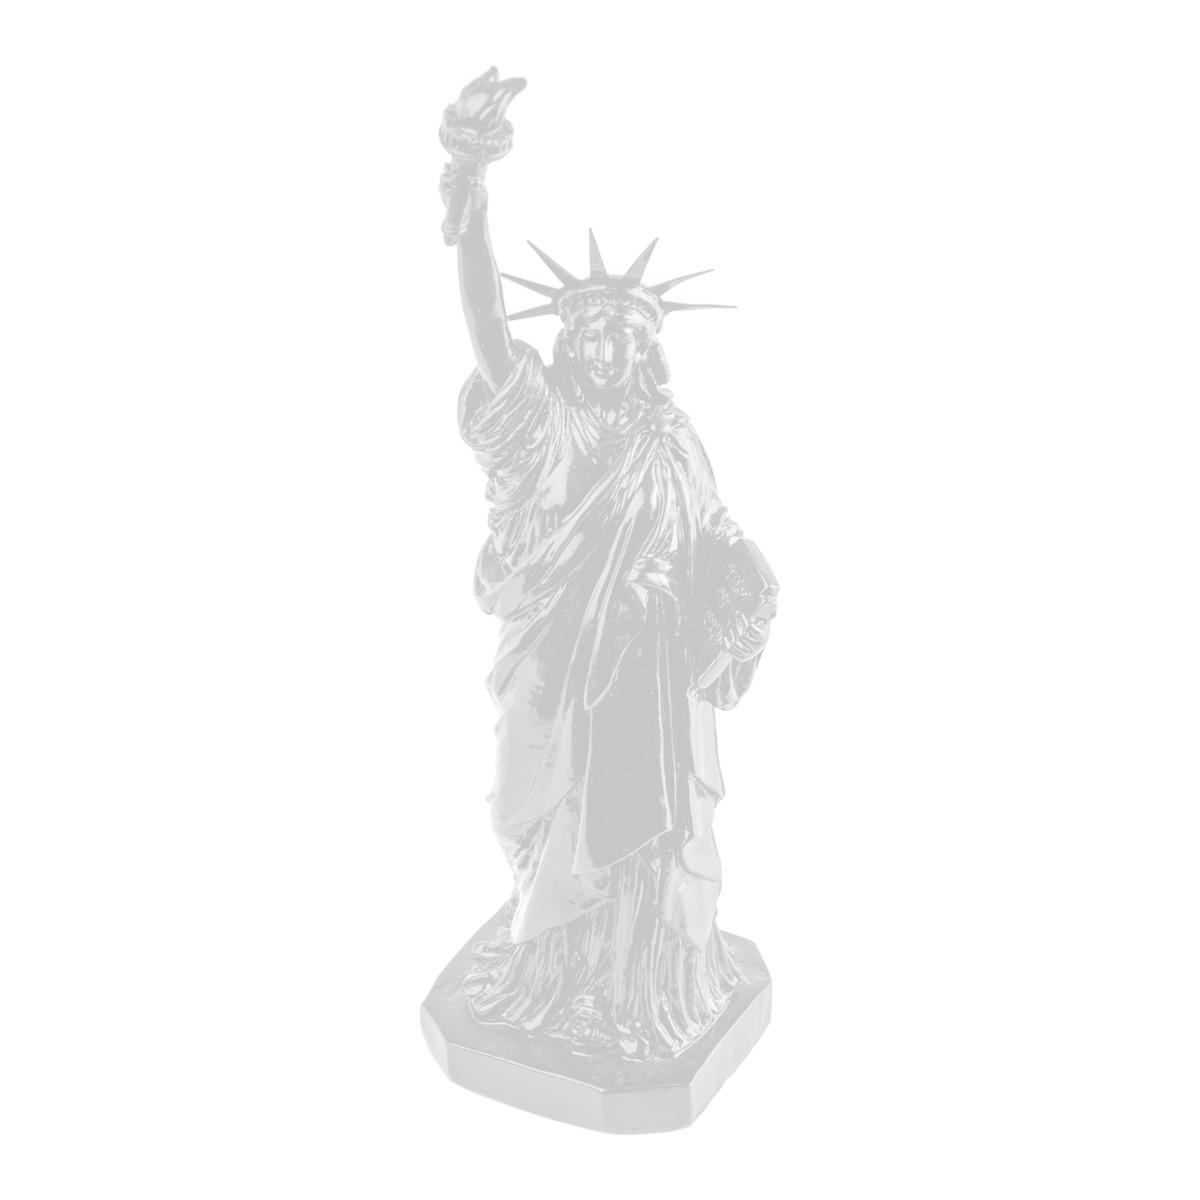 Statue de la liberté en résine - 8,8 x H 30 cm - Différents coloris